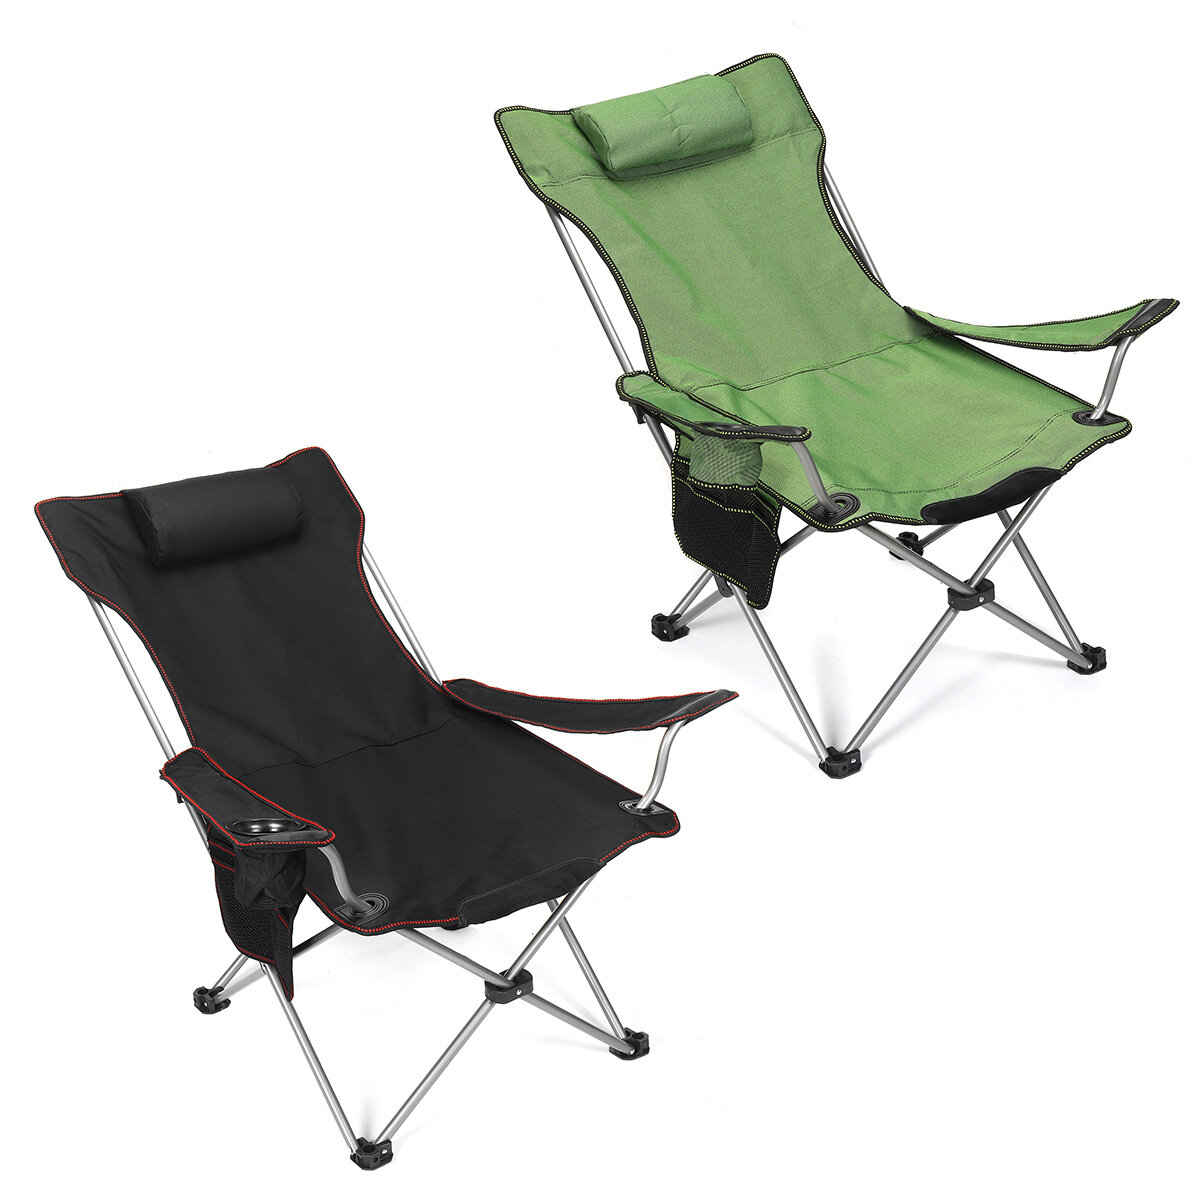 Chaise pliante de camping légère et portable pour la pêche, le pique-nique, la plage, la randonnée et la détente